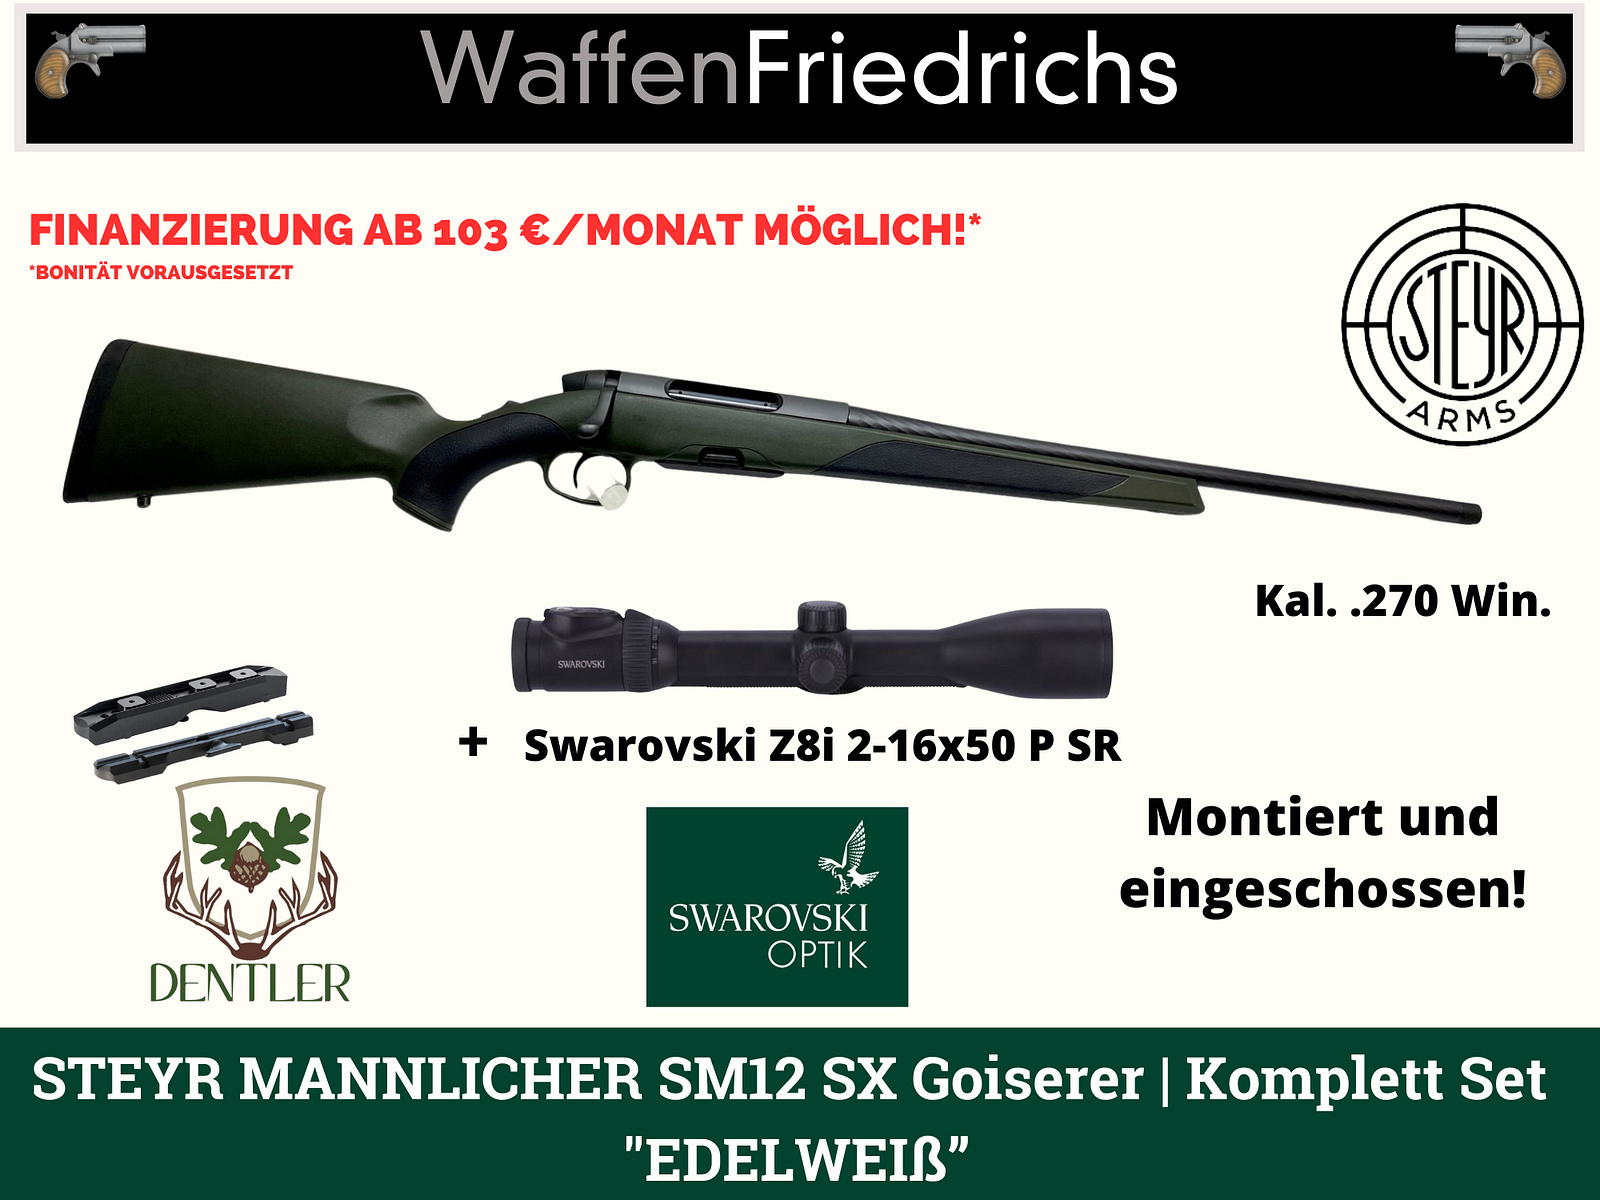 STEYR MANNLICHER SM 12 SX Goiserer | Komplettangebot "Edelweiß" - WaffenFriedrichs